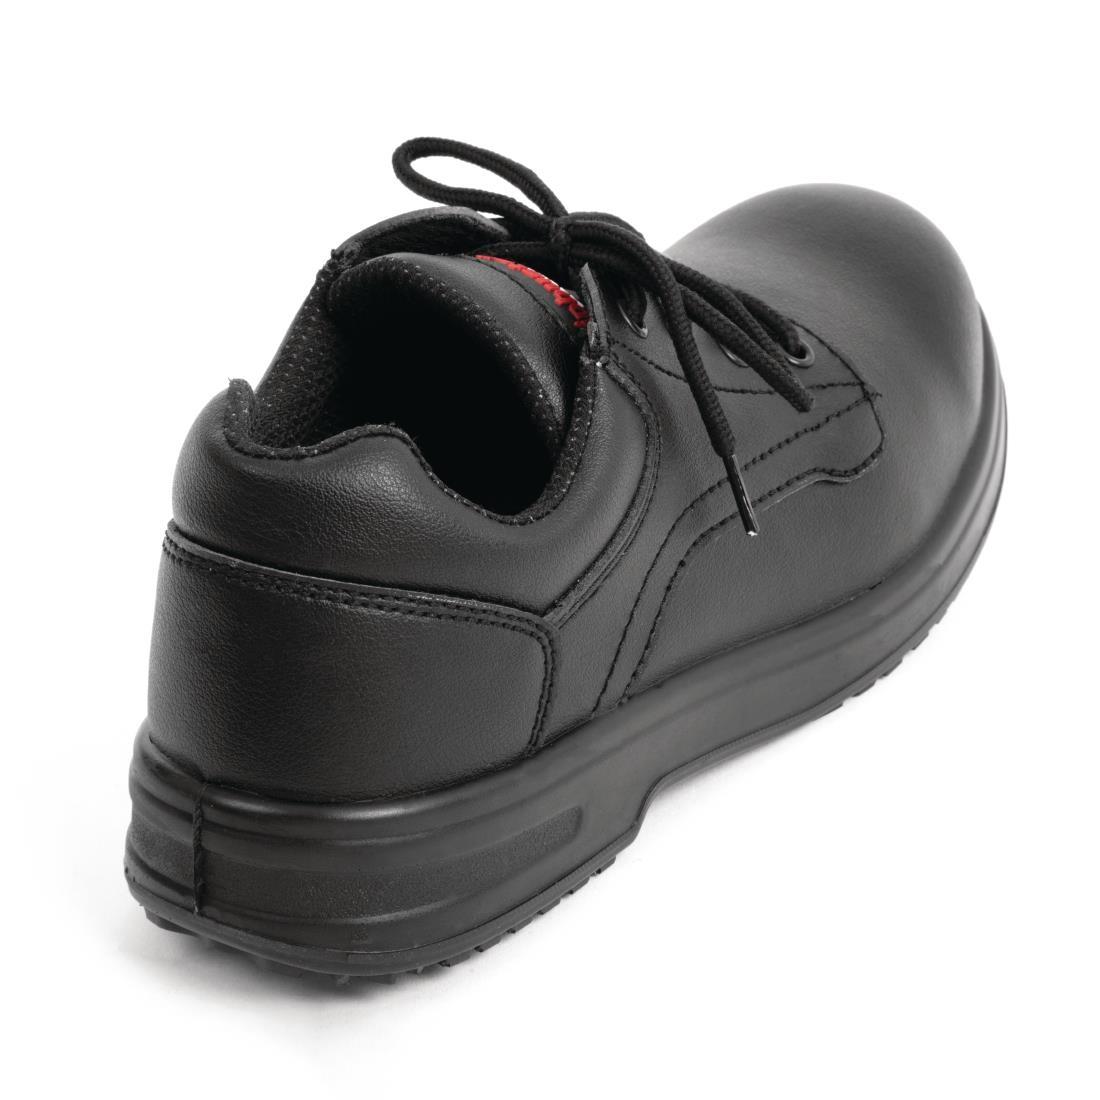 Slipbuster Basic Shoes Slip Resistant Black 40 - BB498-40  - 3